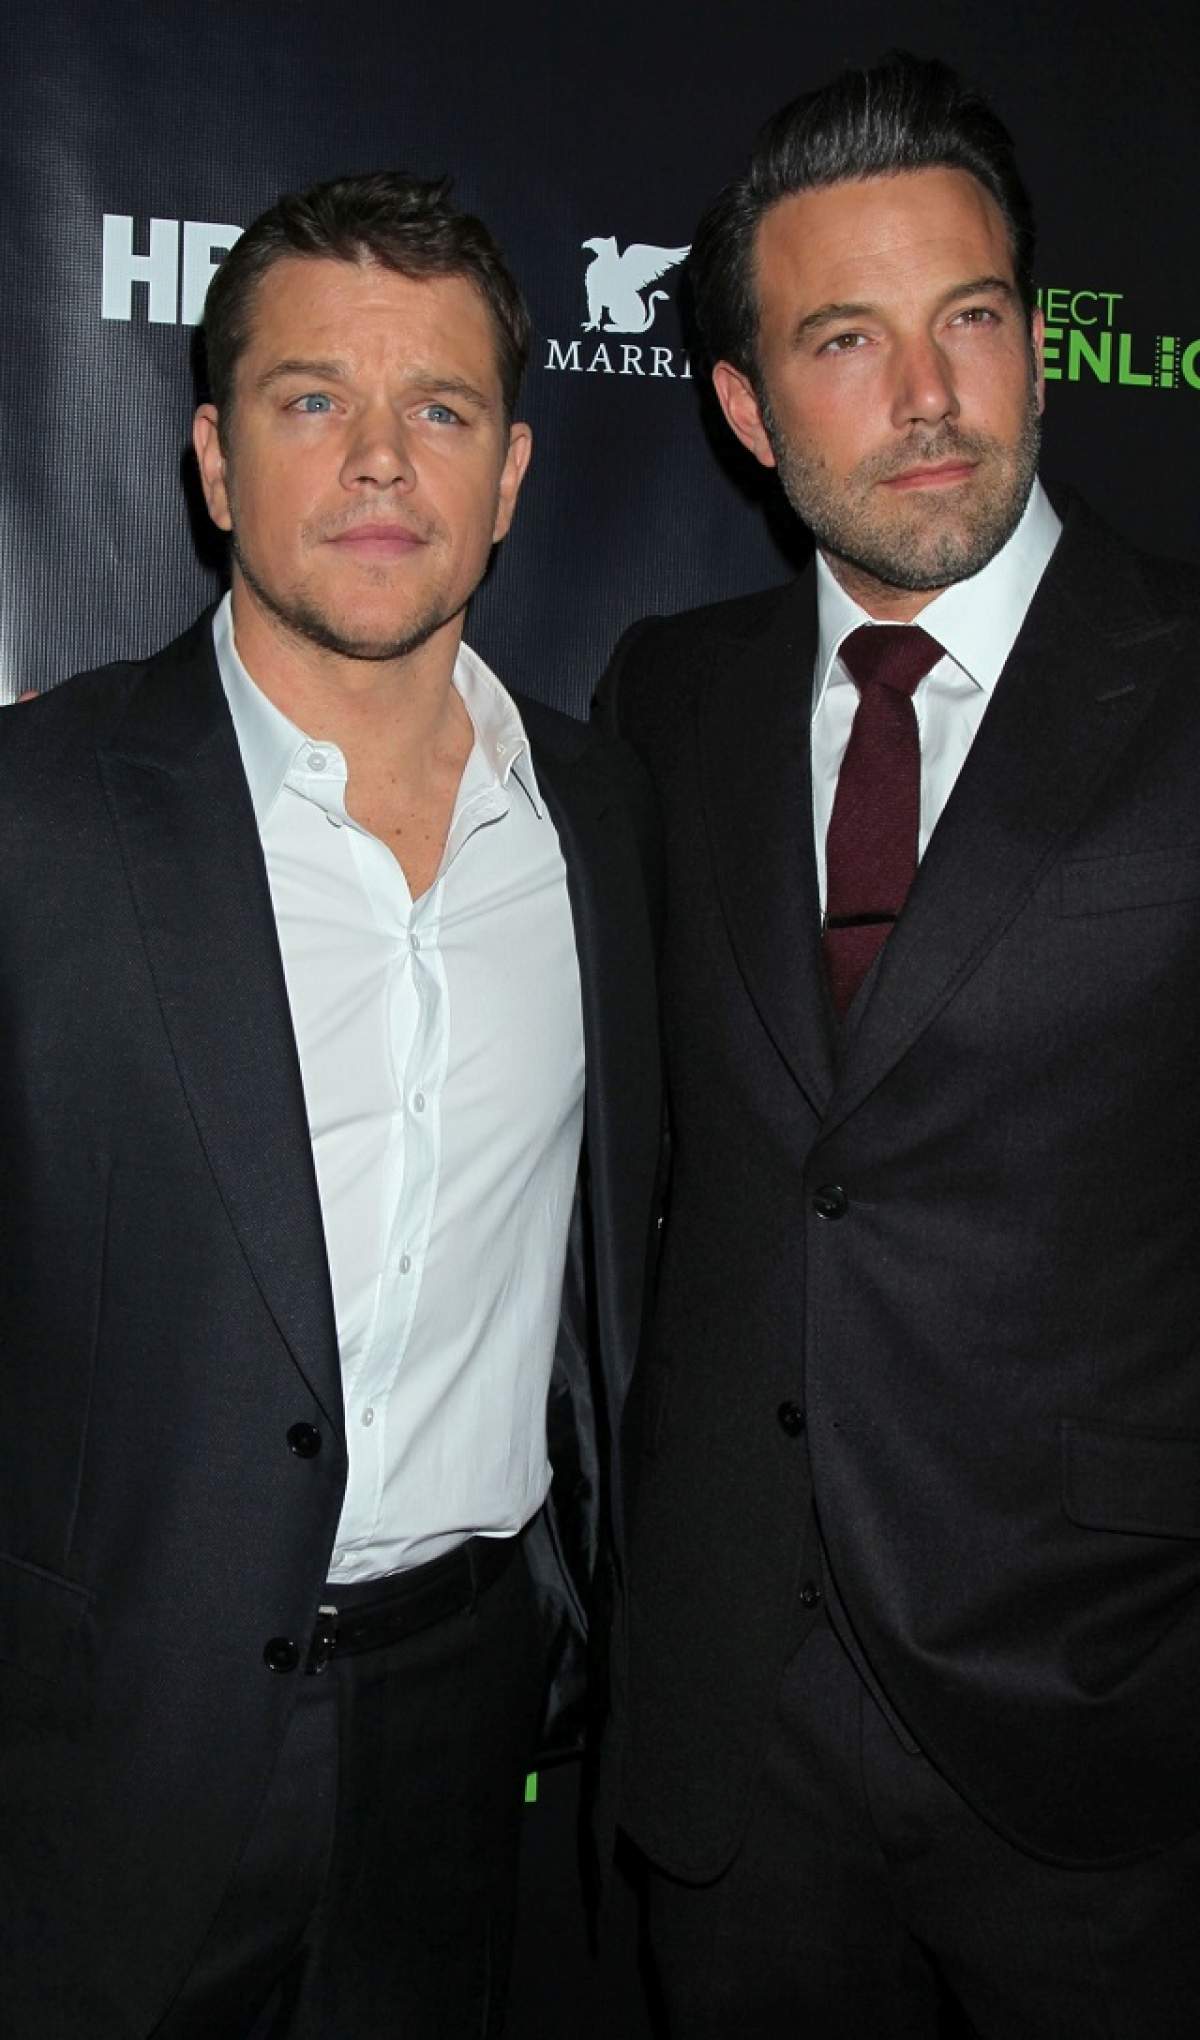 Mărturisire incredibilă! Actorul Matt Damon adoarme cu "bărbăţia" lui Ben Affleck în gând